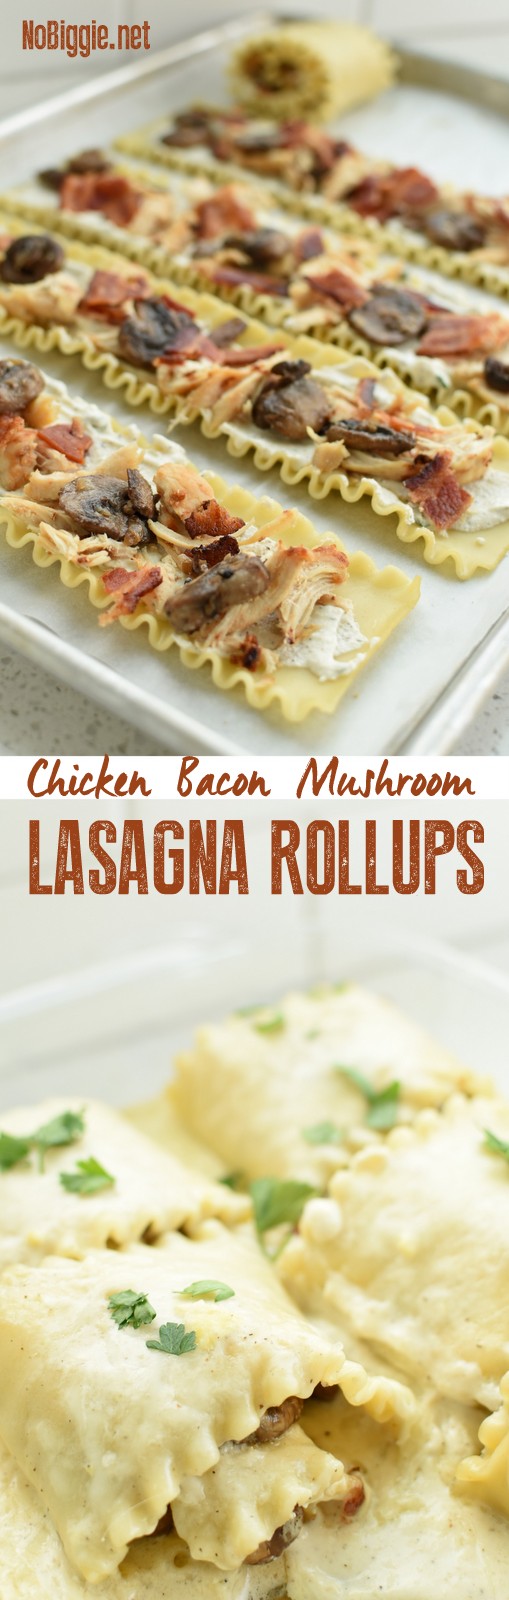 chicken bacon mushroom Lasagna Rollups | NoBiggie.net